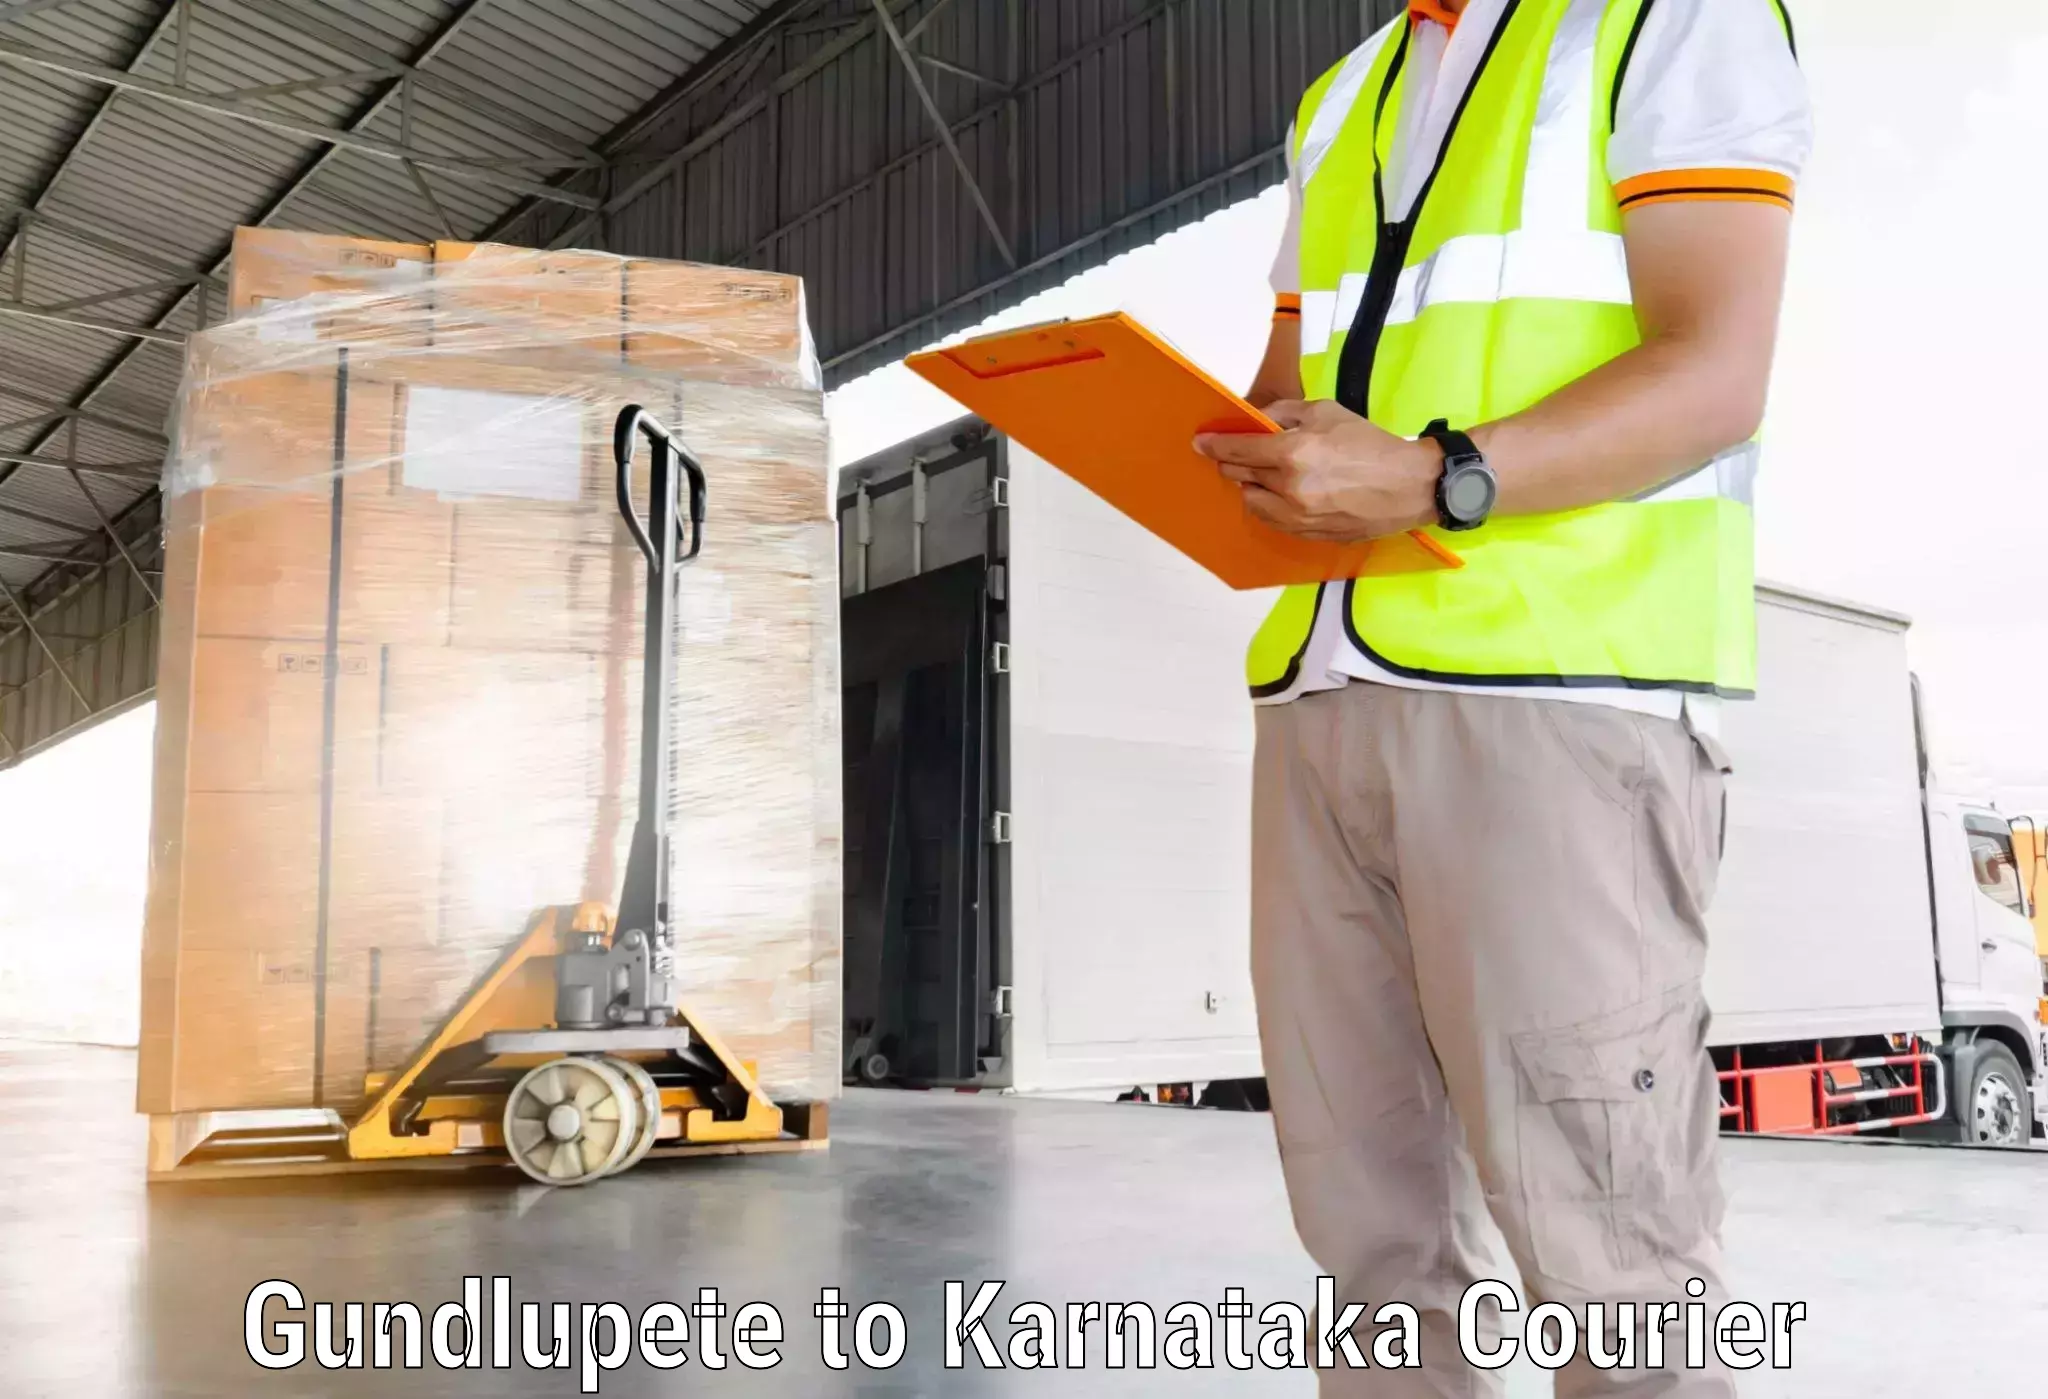 Global shipping networks Gundlupete to NITTE Mangaluru